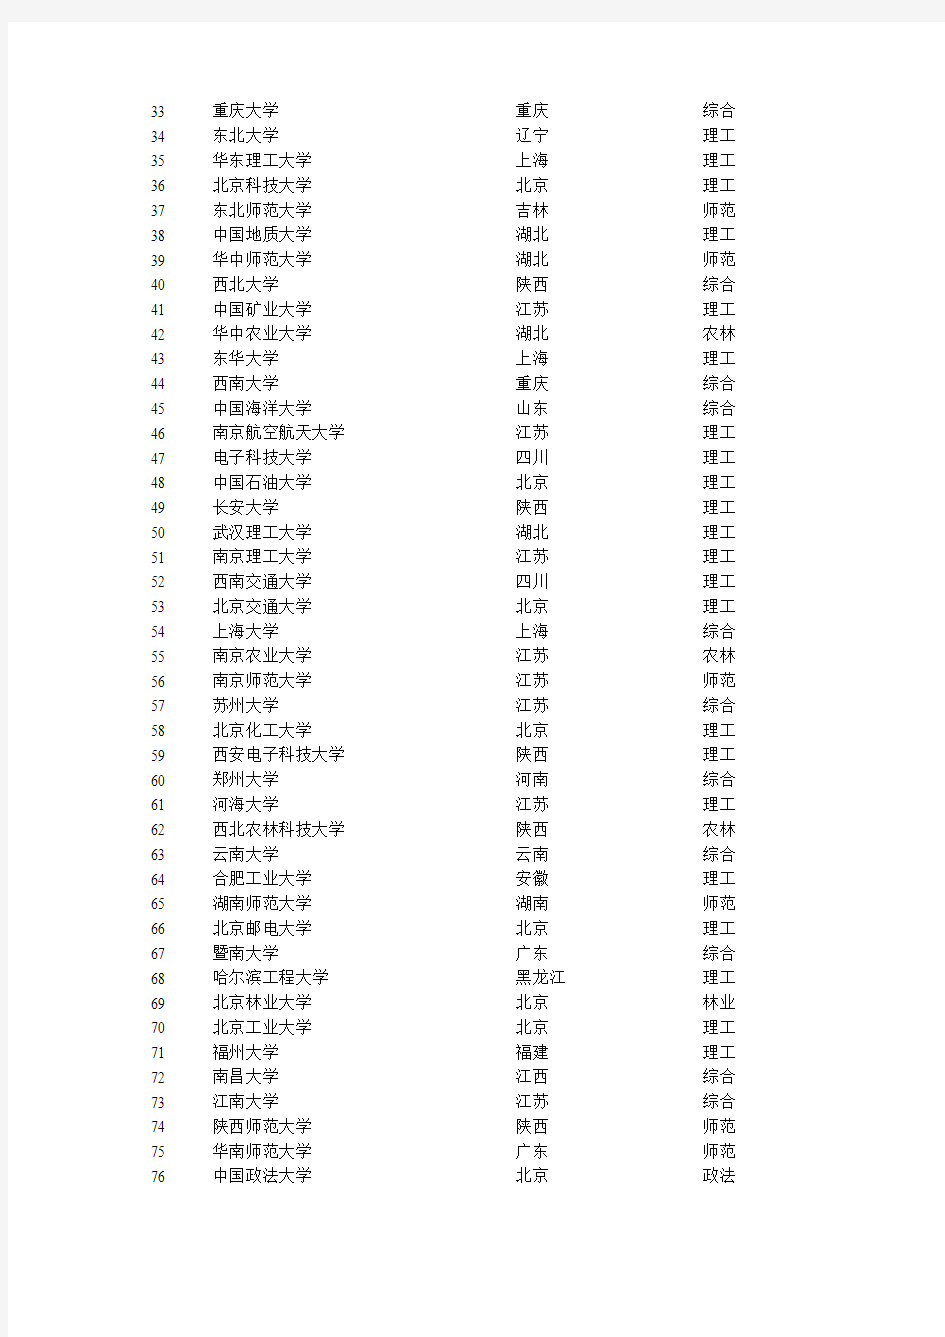 2012中国大陆大学500强排名